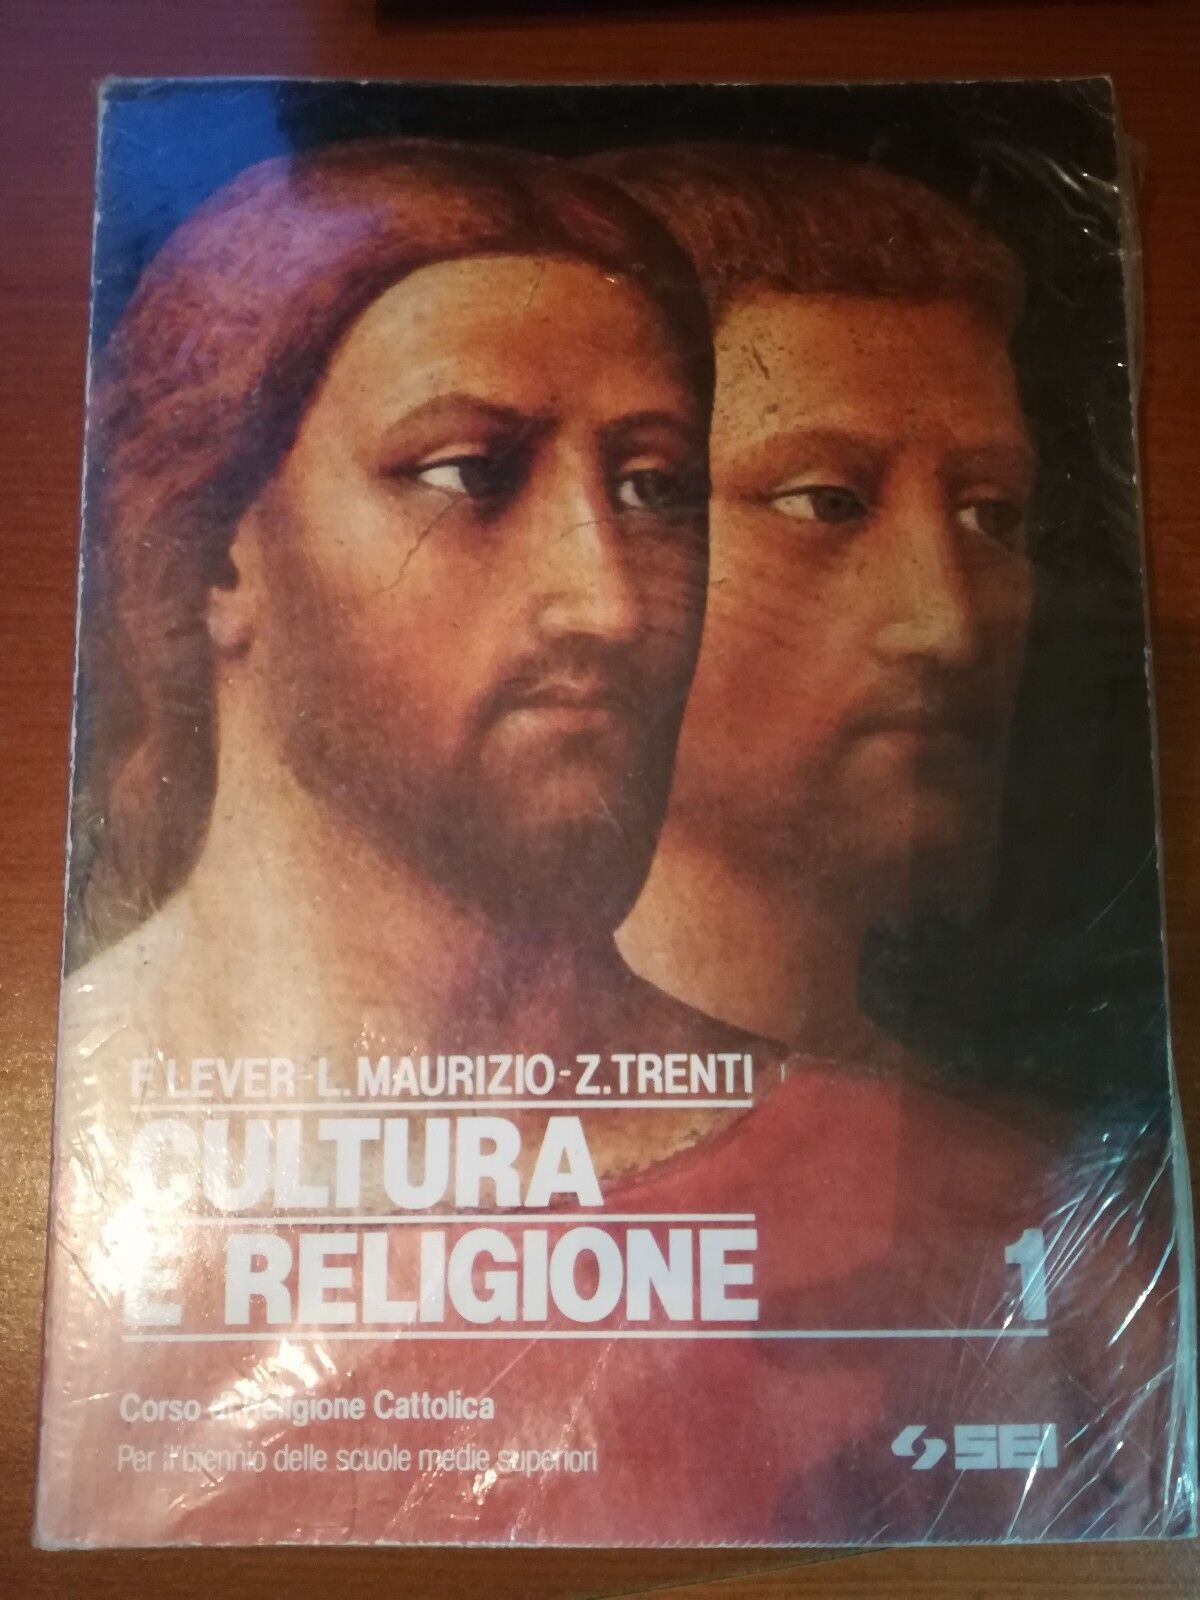 Cultura e religione - F.Lever,L.Maurizio,Z.Trenti - Sei - 1991 - M